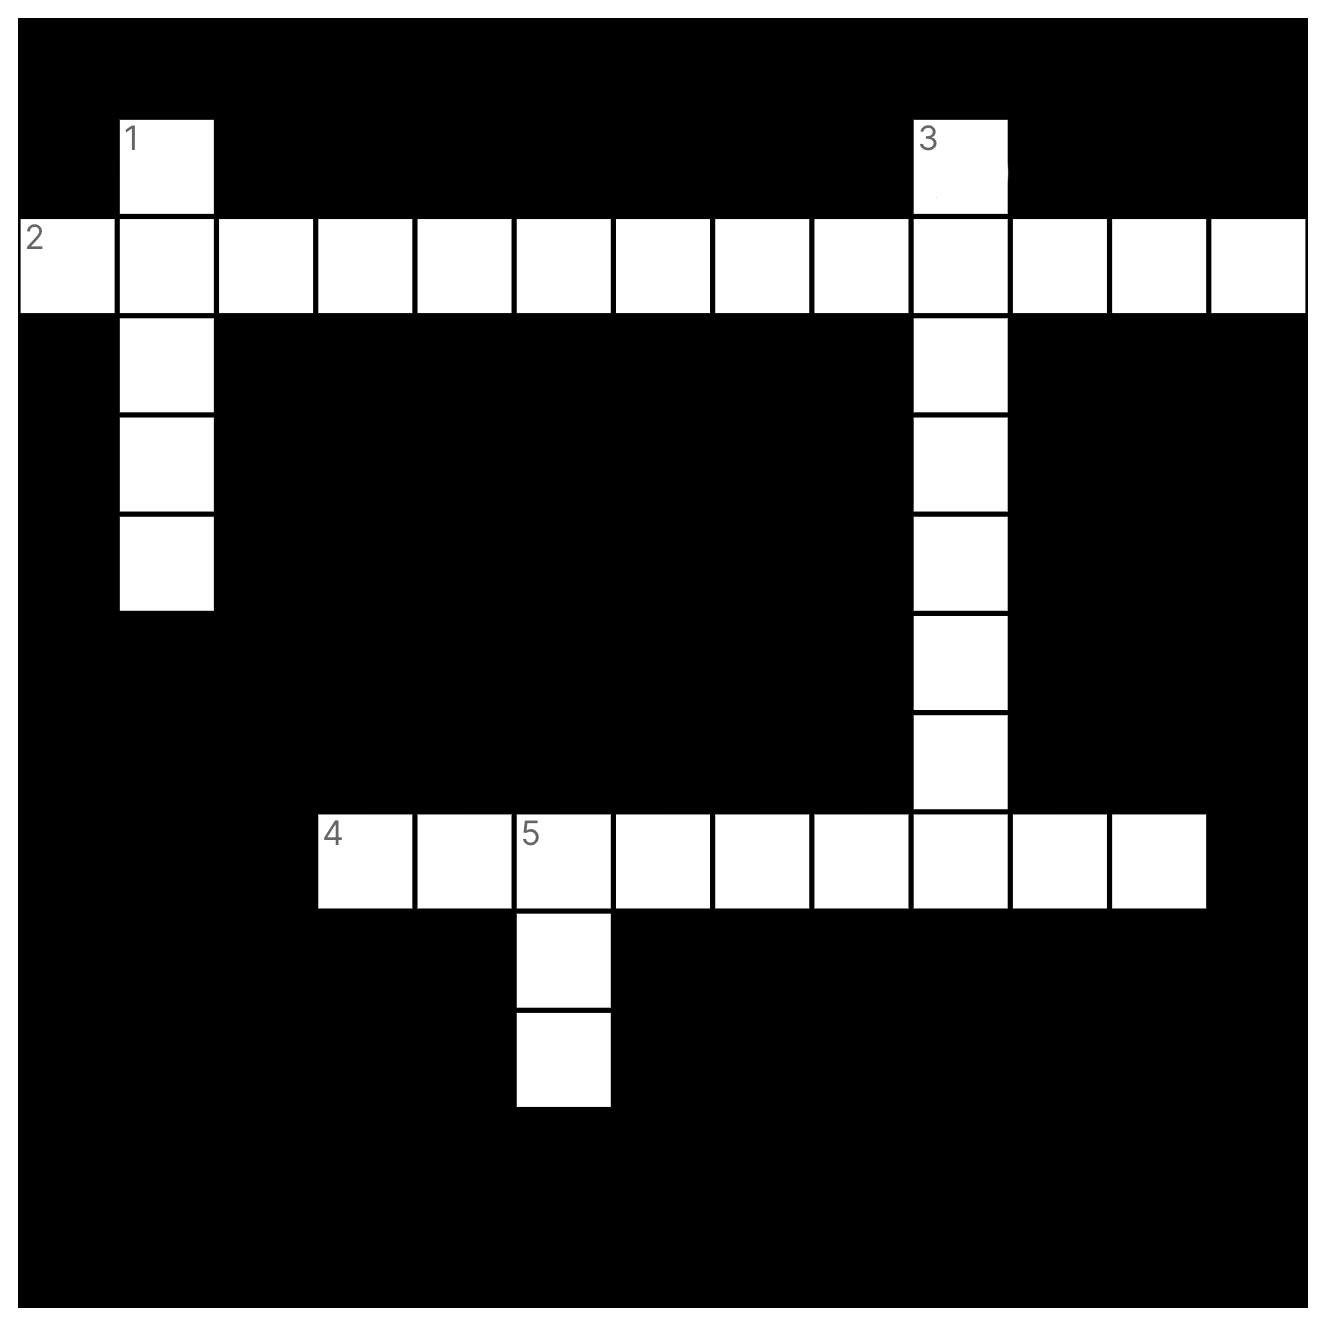 십자말풀이 퍼즐 스마트 컨트랙트 튜토리얼 2장의 빈 십자말풀이